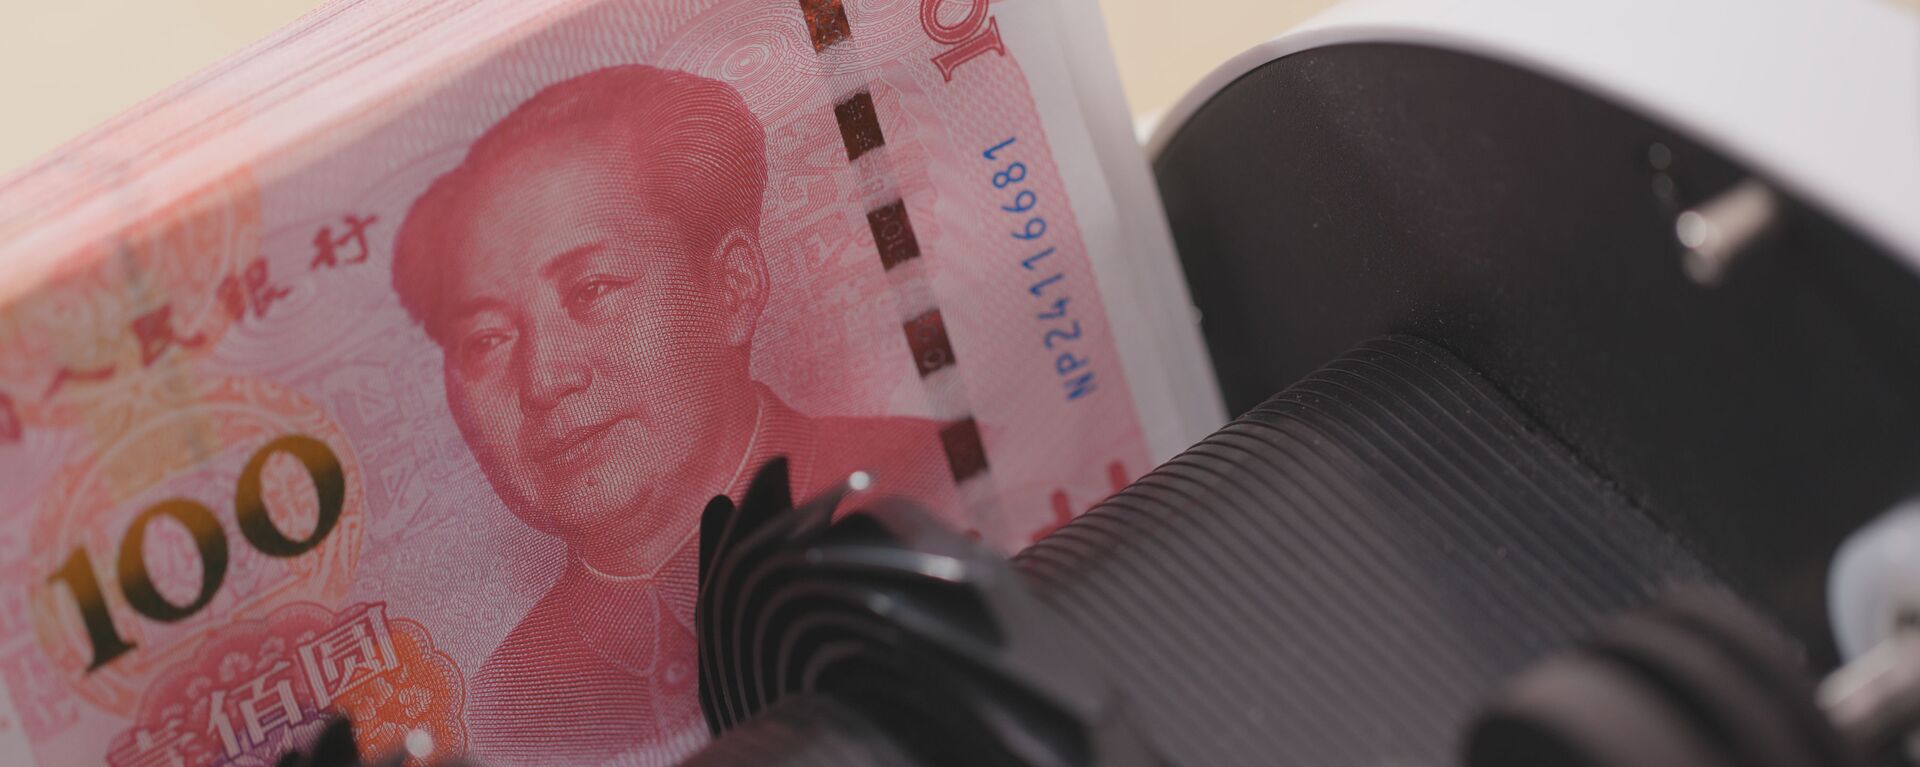 Счетчик денег проверяет номера банкнот пачки китайских юаней - Sputnik Việt Nam, 1920, 07.04.2022